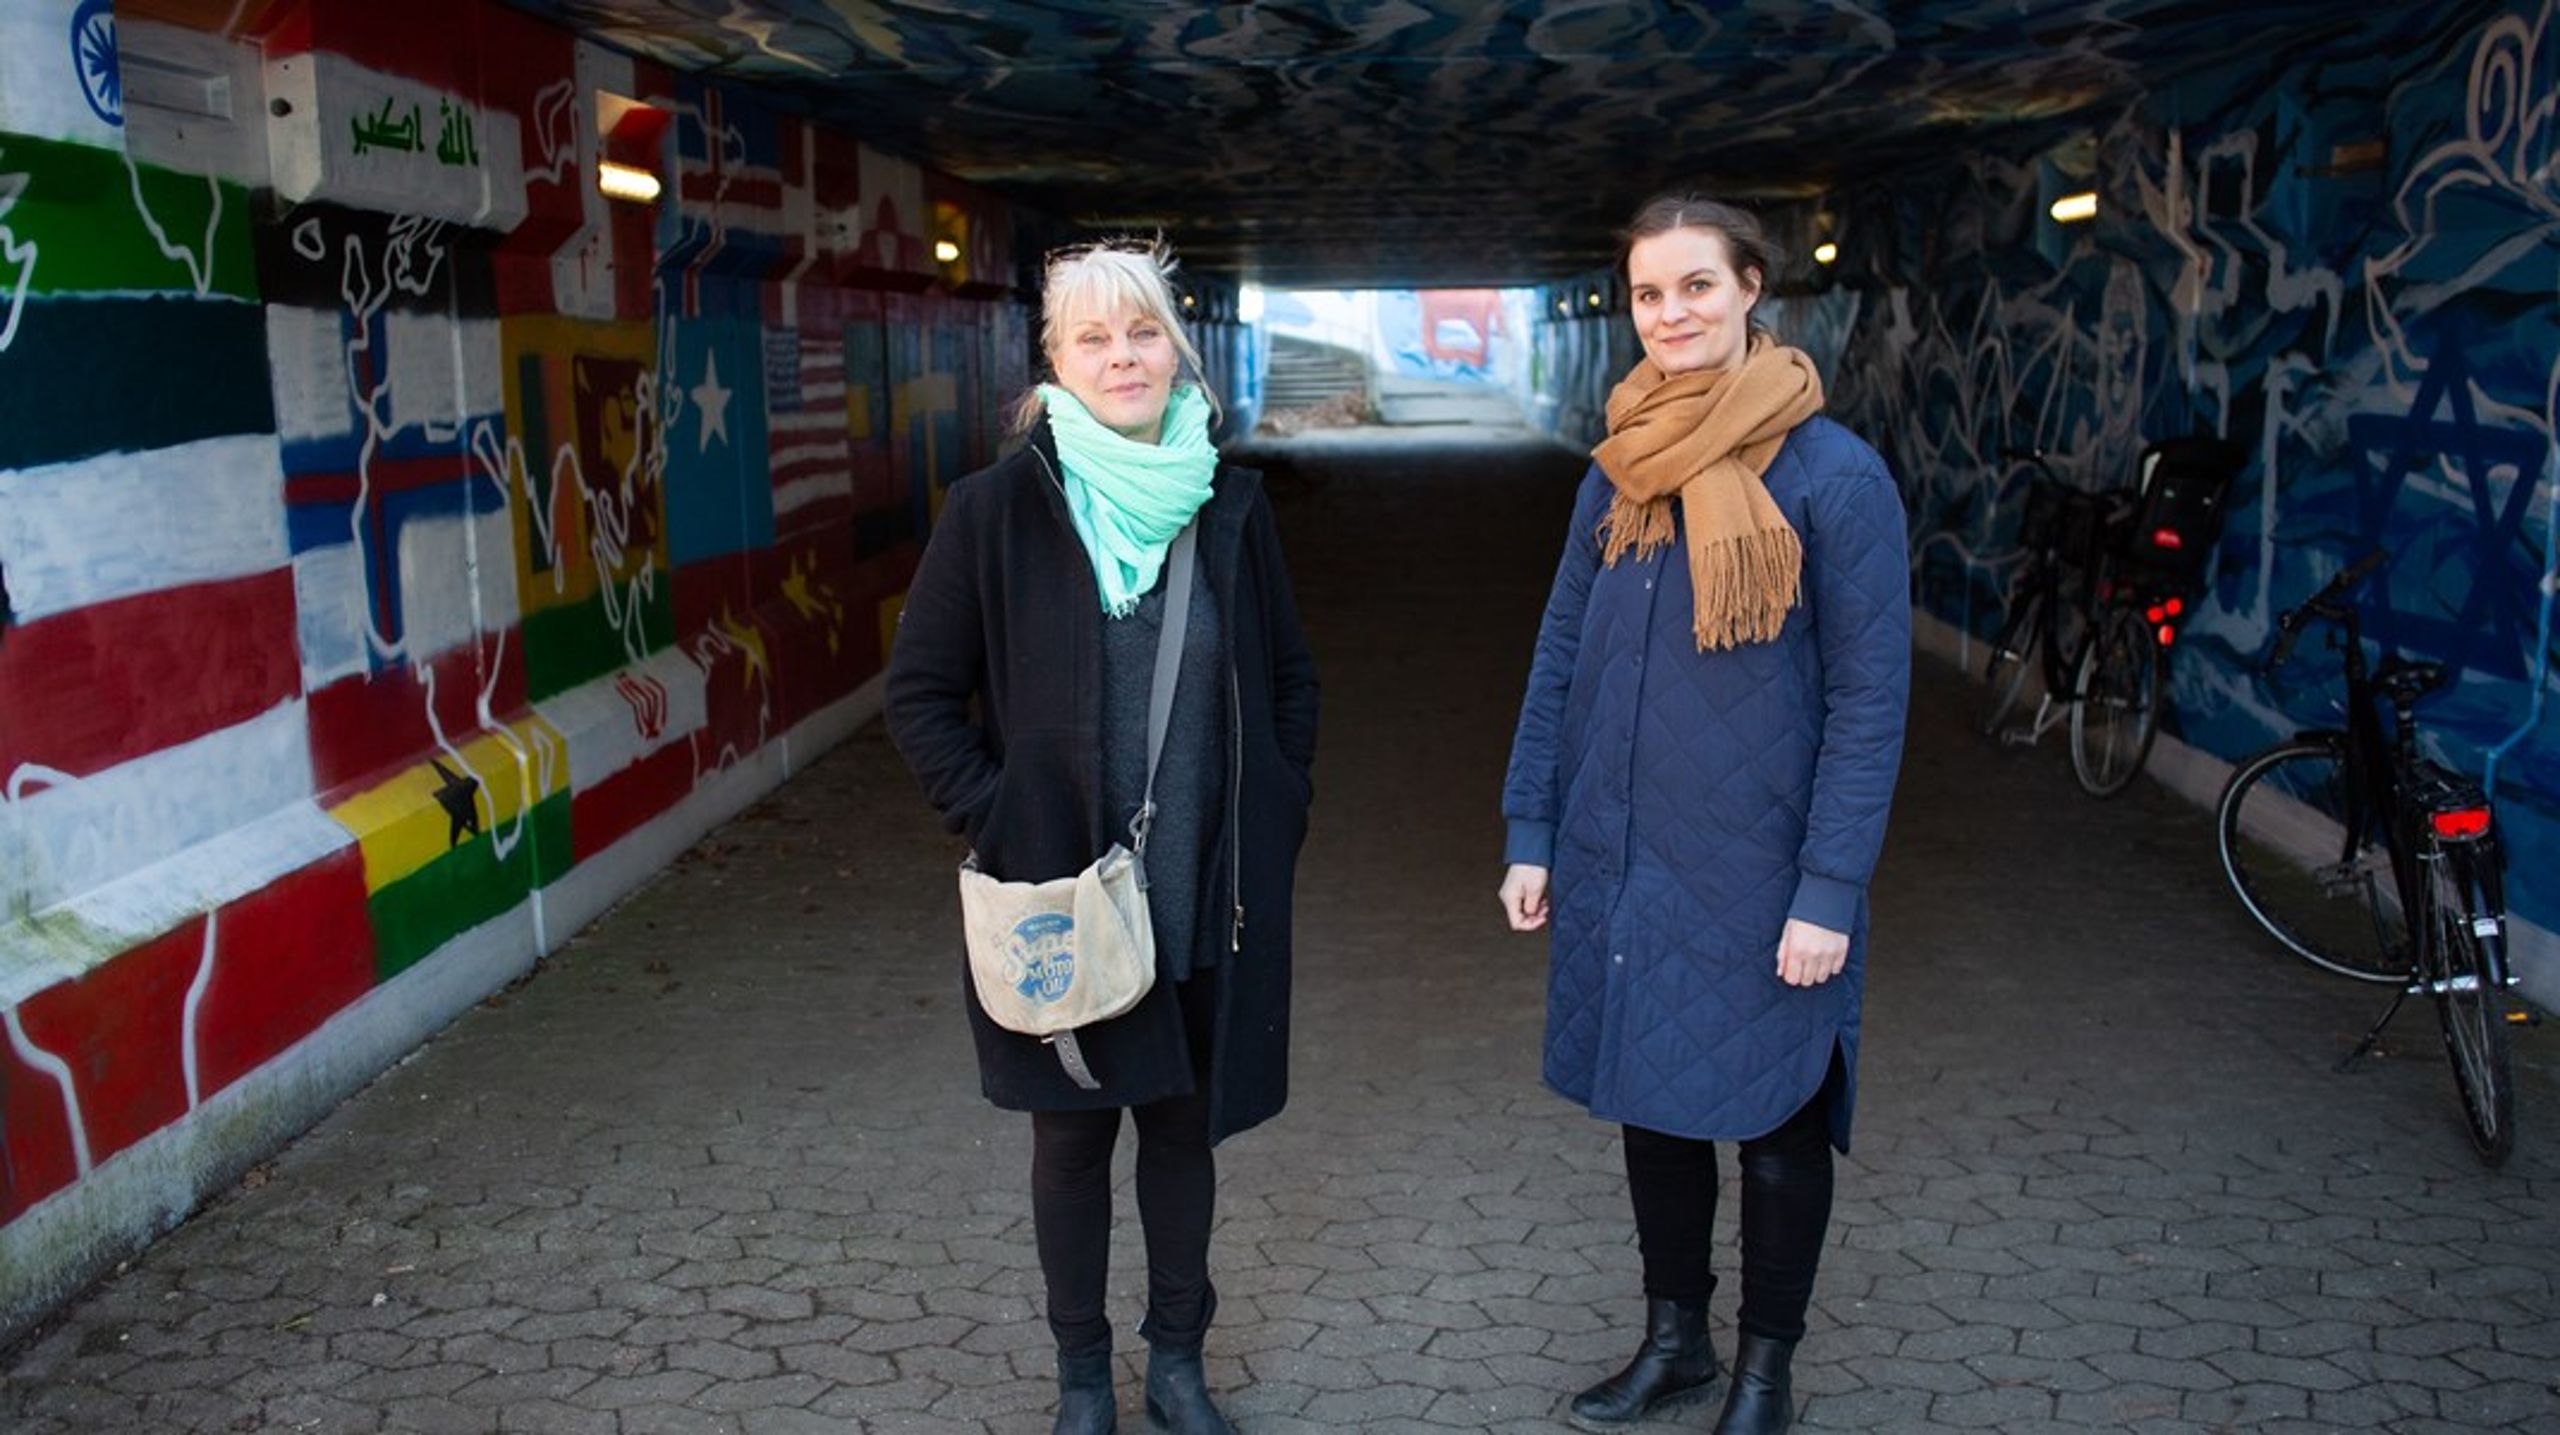 Boligsocial
medarbejder Mette Jørgensen (TV) og lærer Maja Sandgren Birk står i tunnelen&nbsp;som elever fra Iværksætterunge-valgfaget har været med til at gendesigne.&nbsp;